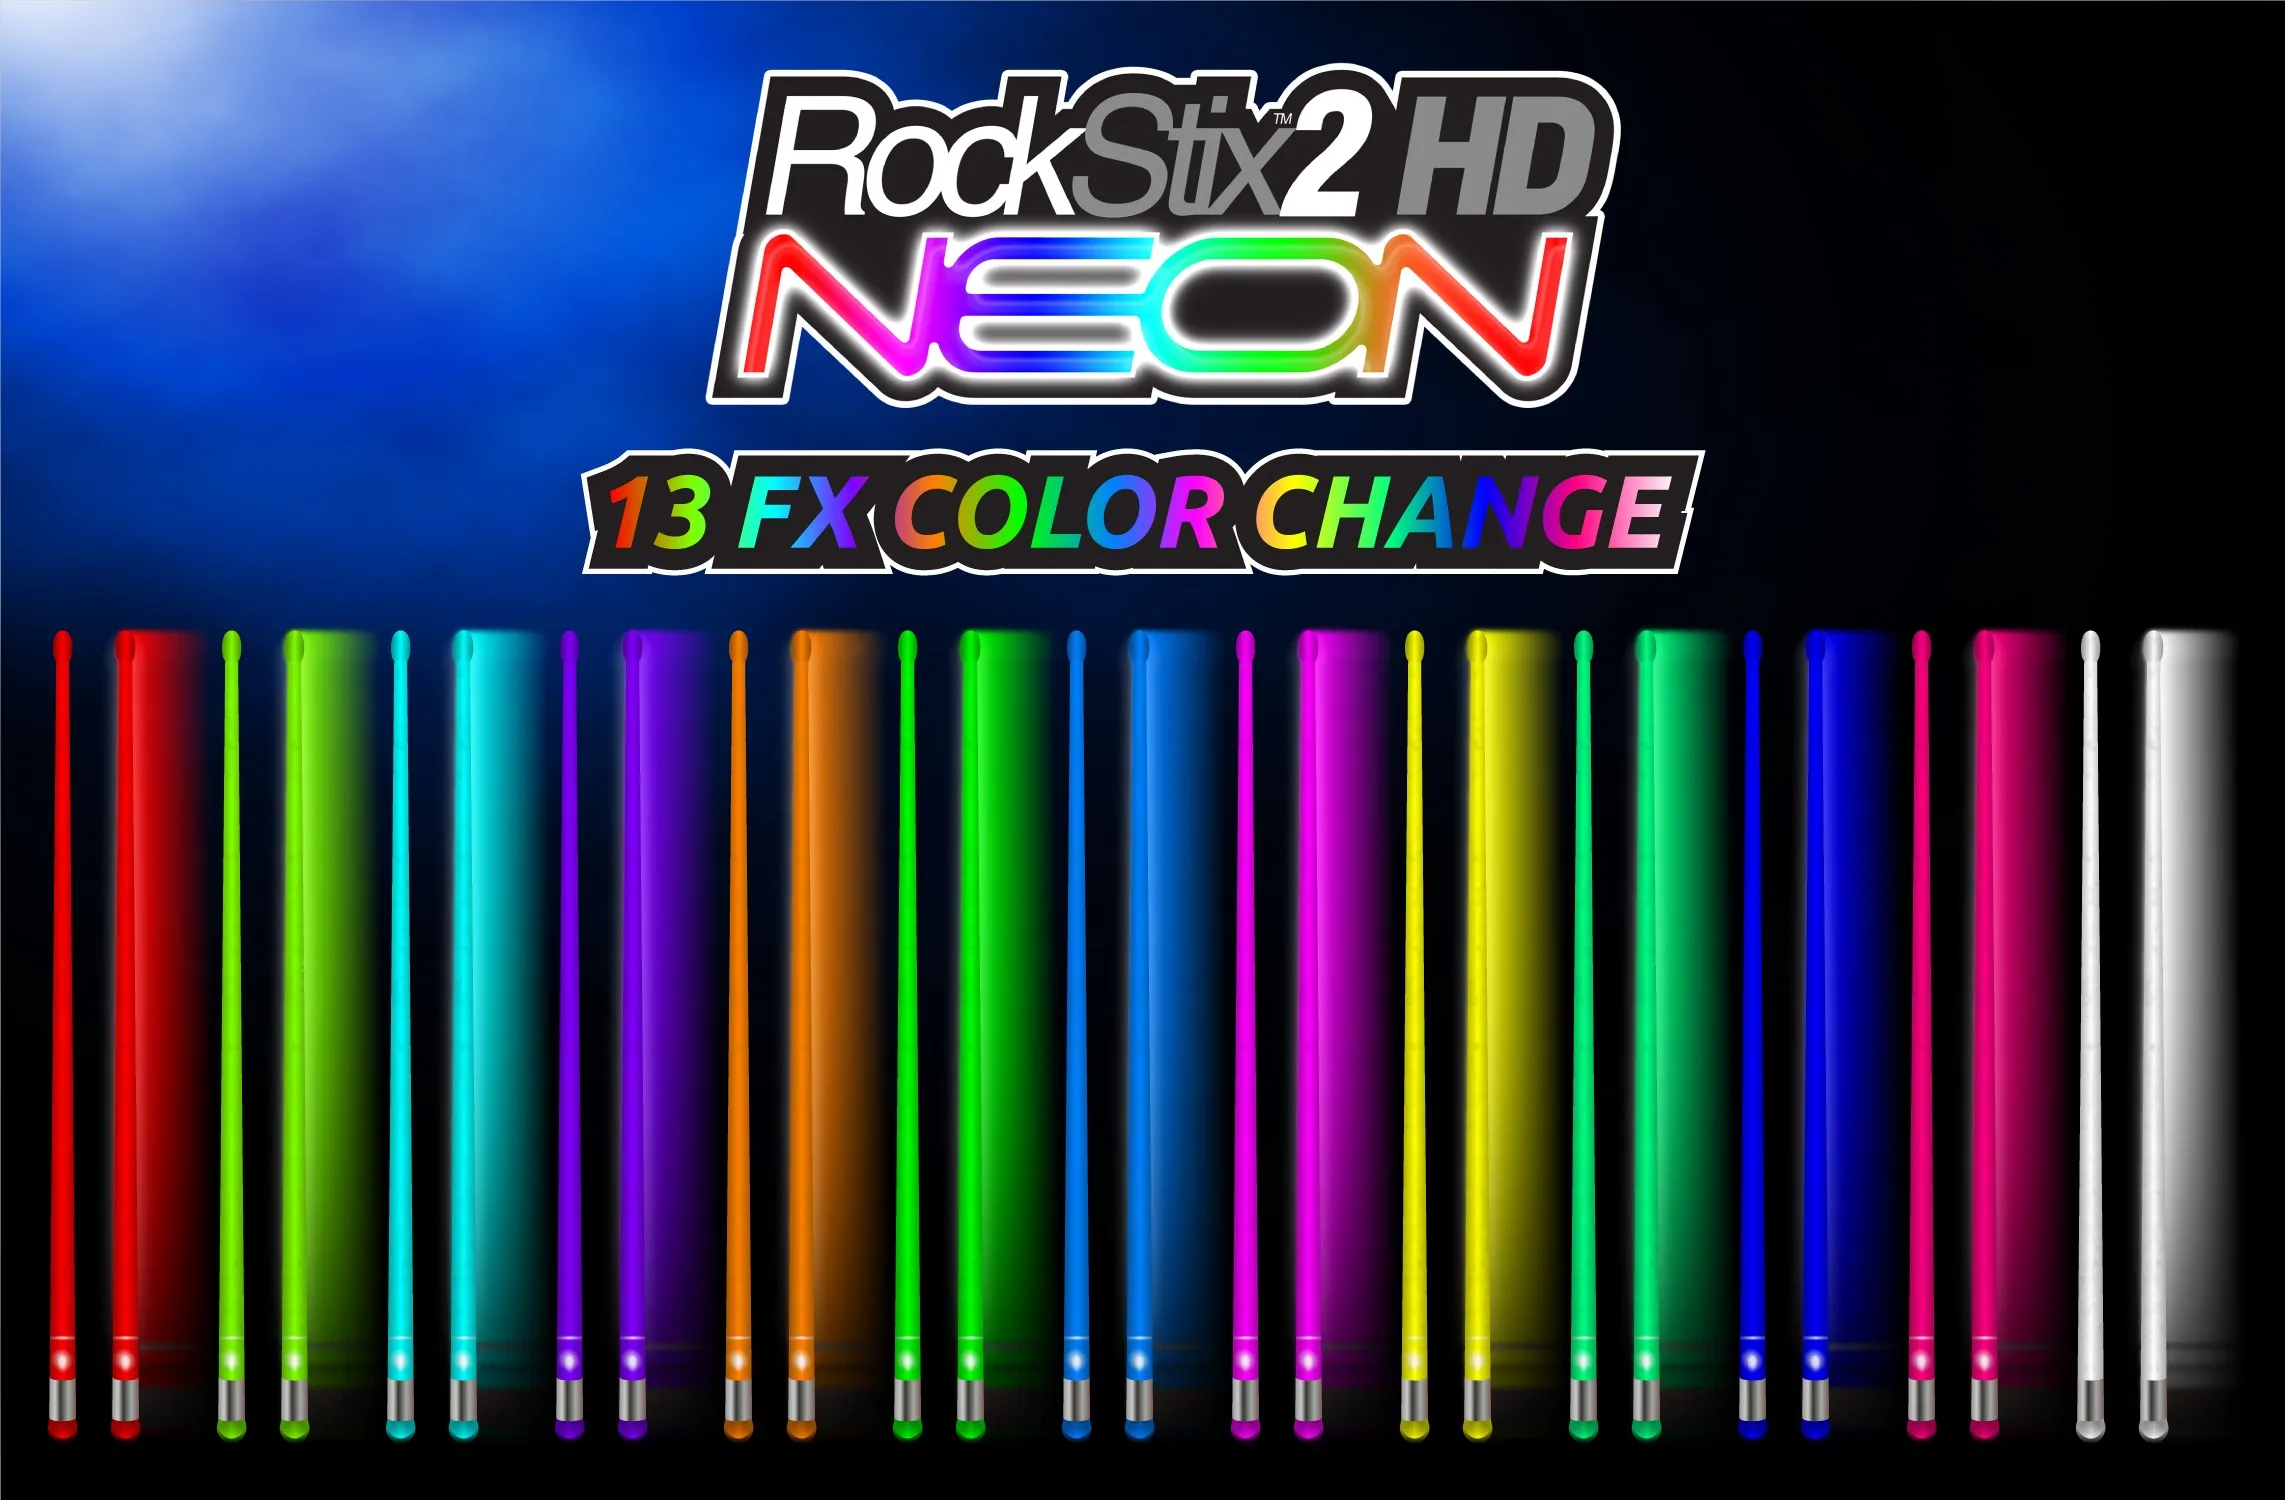 Rockstix 2 HD NEON, Мега яркий светодиодный светильник голени, доступны в 13 FX изменение цвета также красный, зеленый, синий